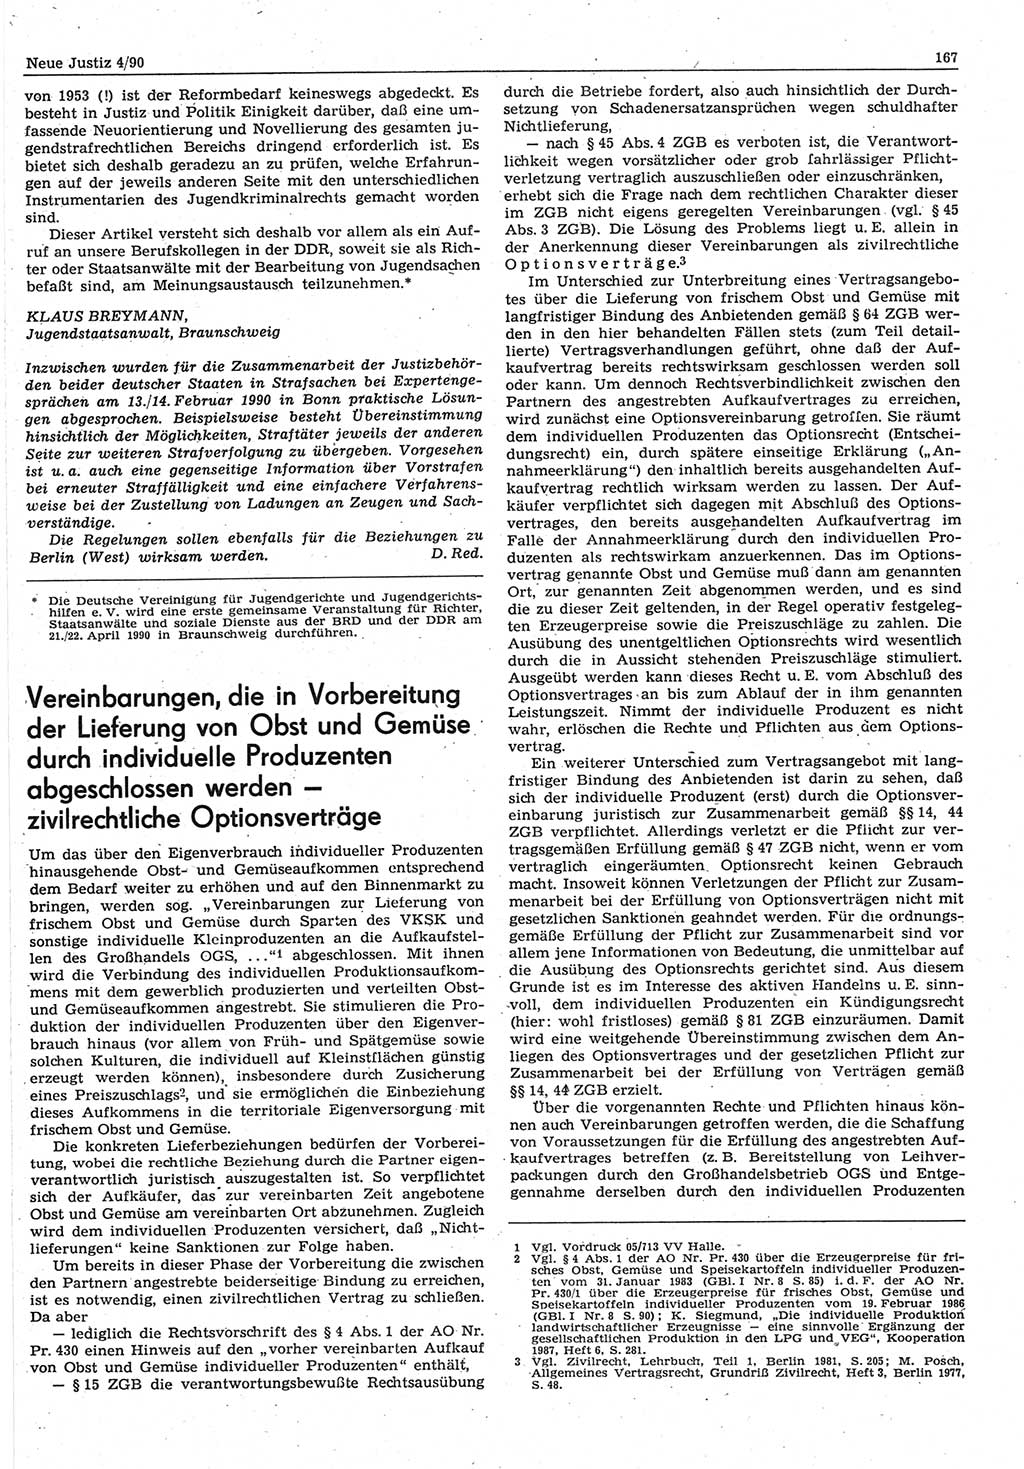 Neue Justiz (NJ), Zeitschrift für Rechtsetzung und Rechtsanwendung [Deutsche Demokratische Republik (DDR)], 44. Jahrgang 1990, Seite 167 (NJ DDR 1990, S. 167)